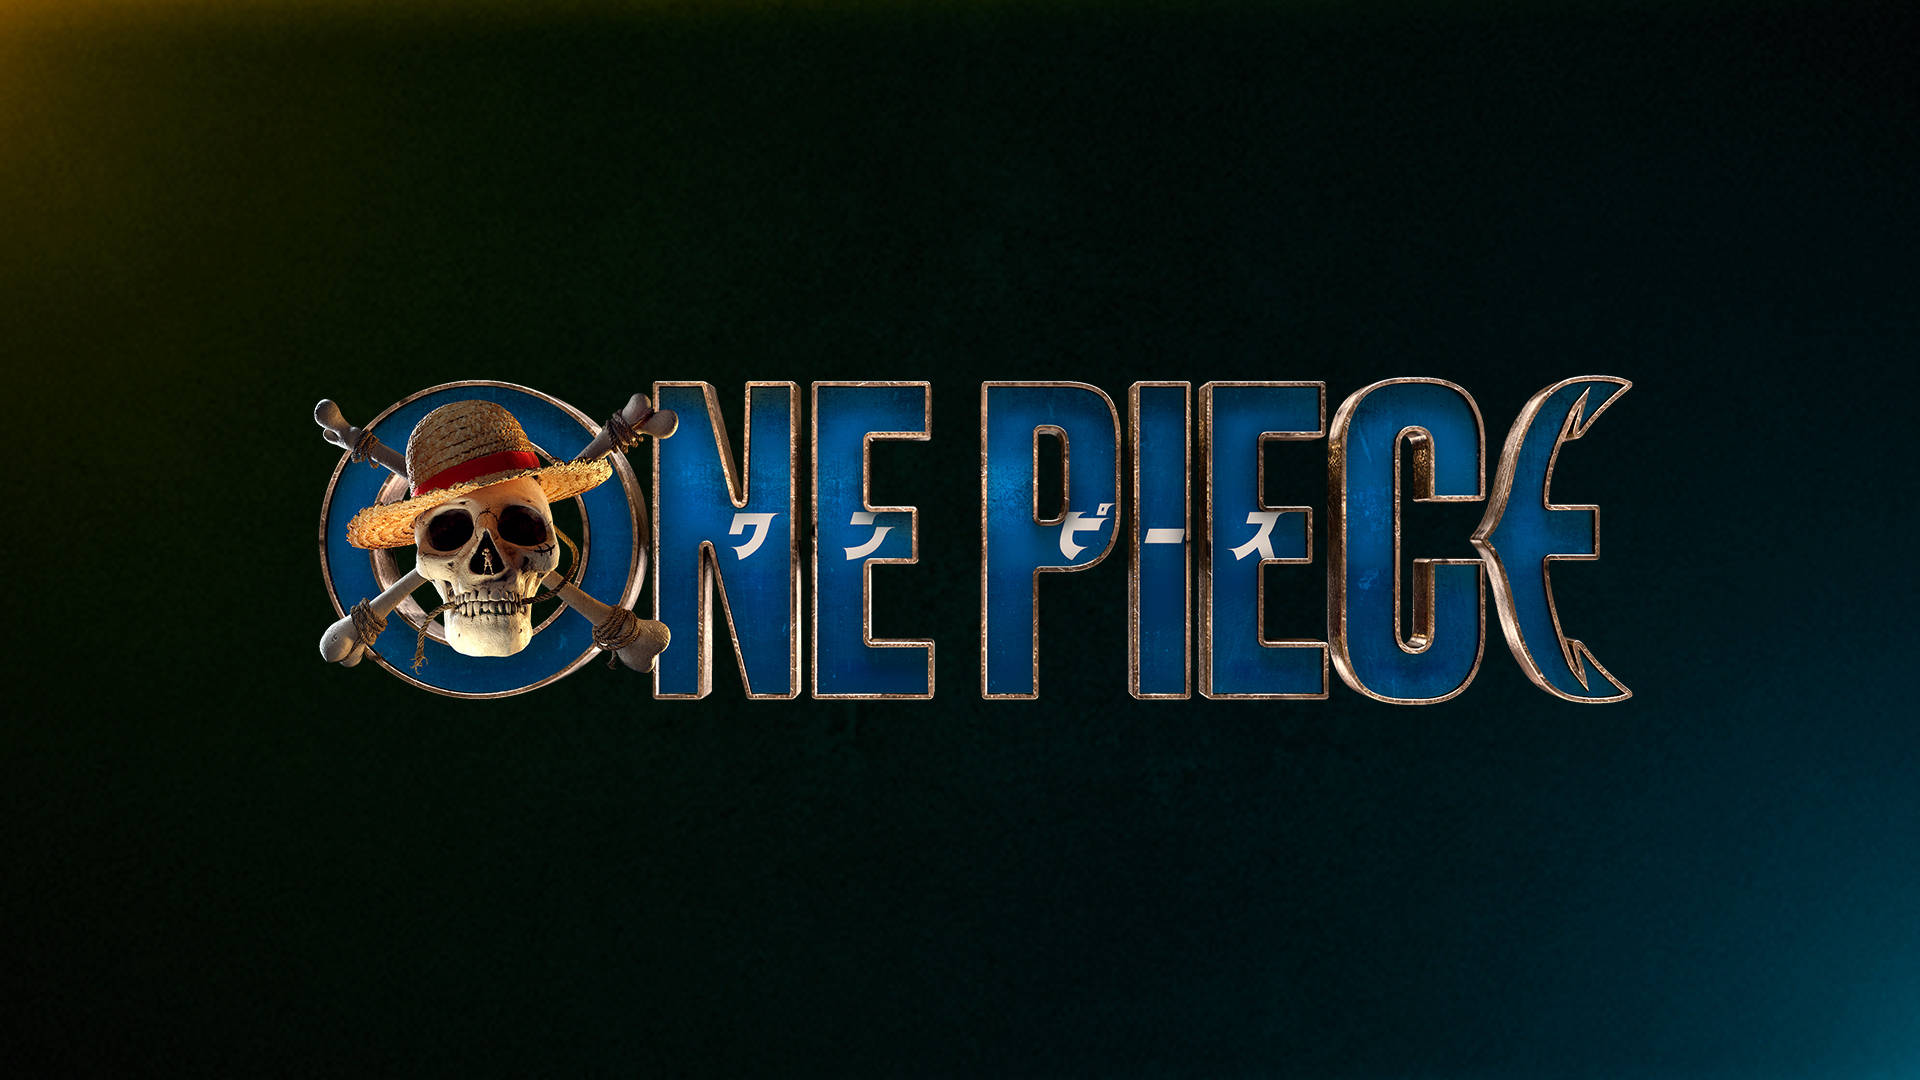 One Piece wallpaper - Với những fan One Piece, hãy khám phá bộ sưu tập hình nền One Piece độc đáo và đầy sáng tạo. Với chất lượng hình ảnh sắc nét và độ phân giải cao, các hình nền này sẽ mang đến cho bạn một không gian làm việc tràn đầy năng lượng và hứng khởi.